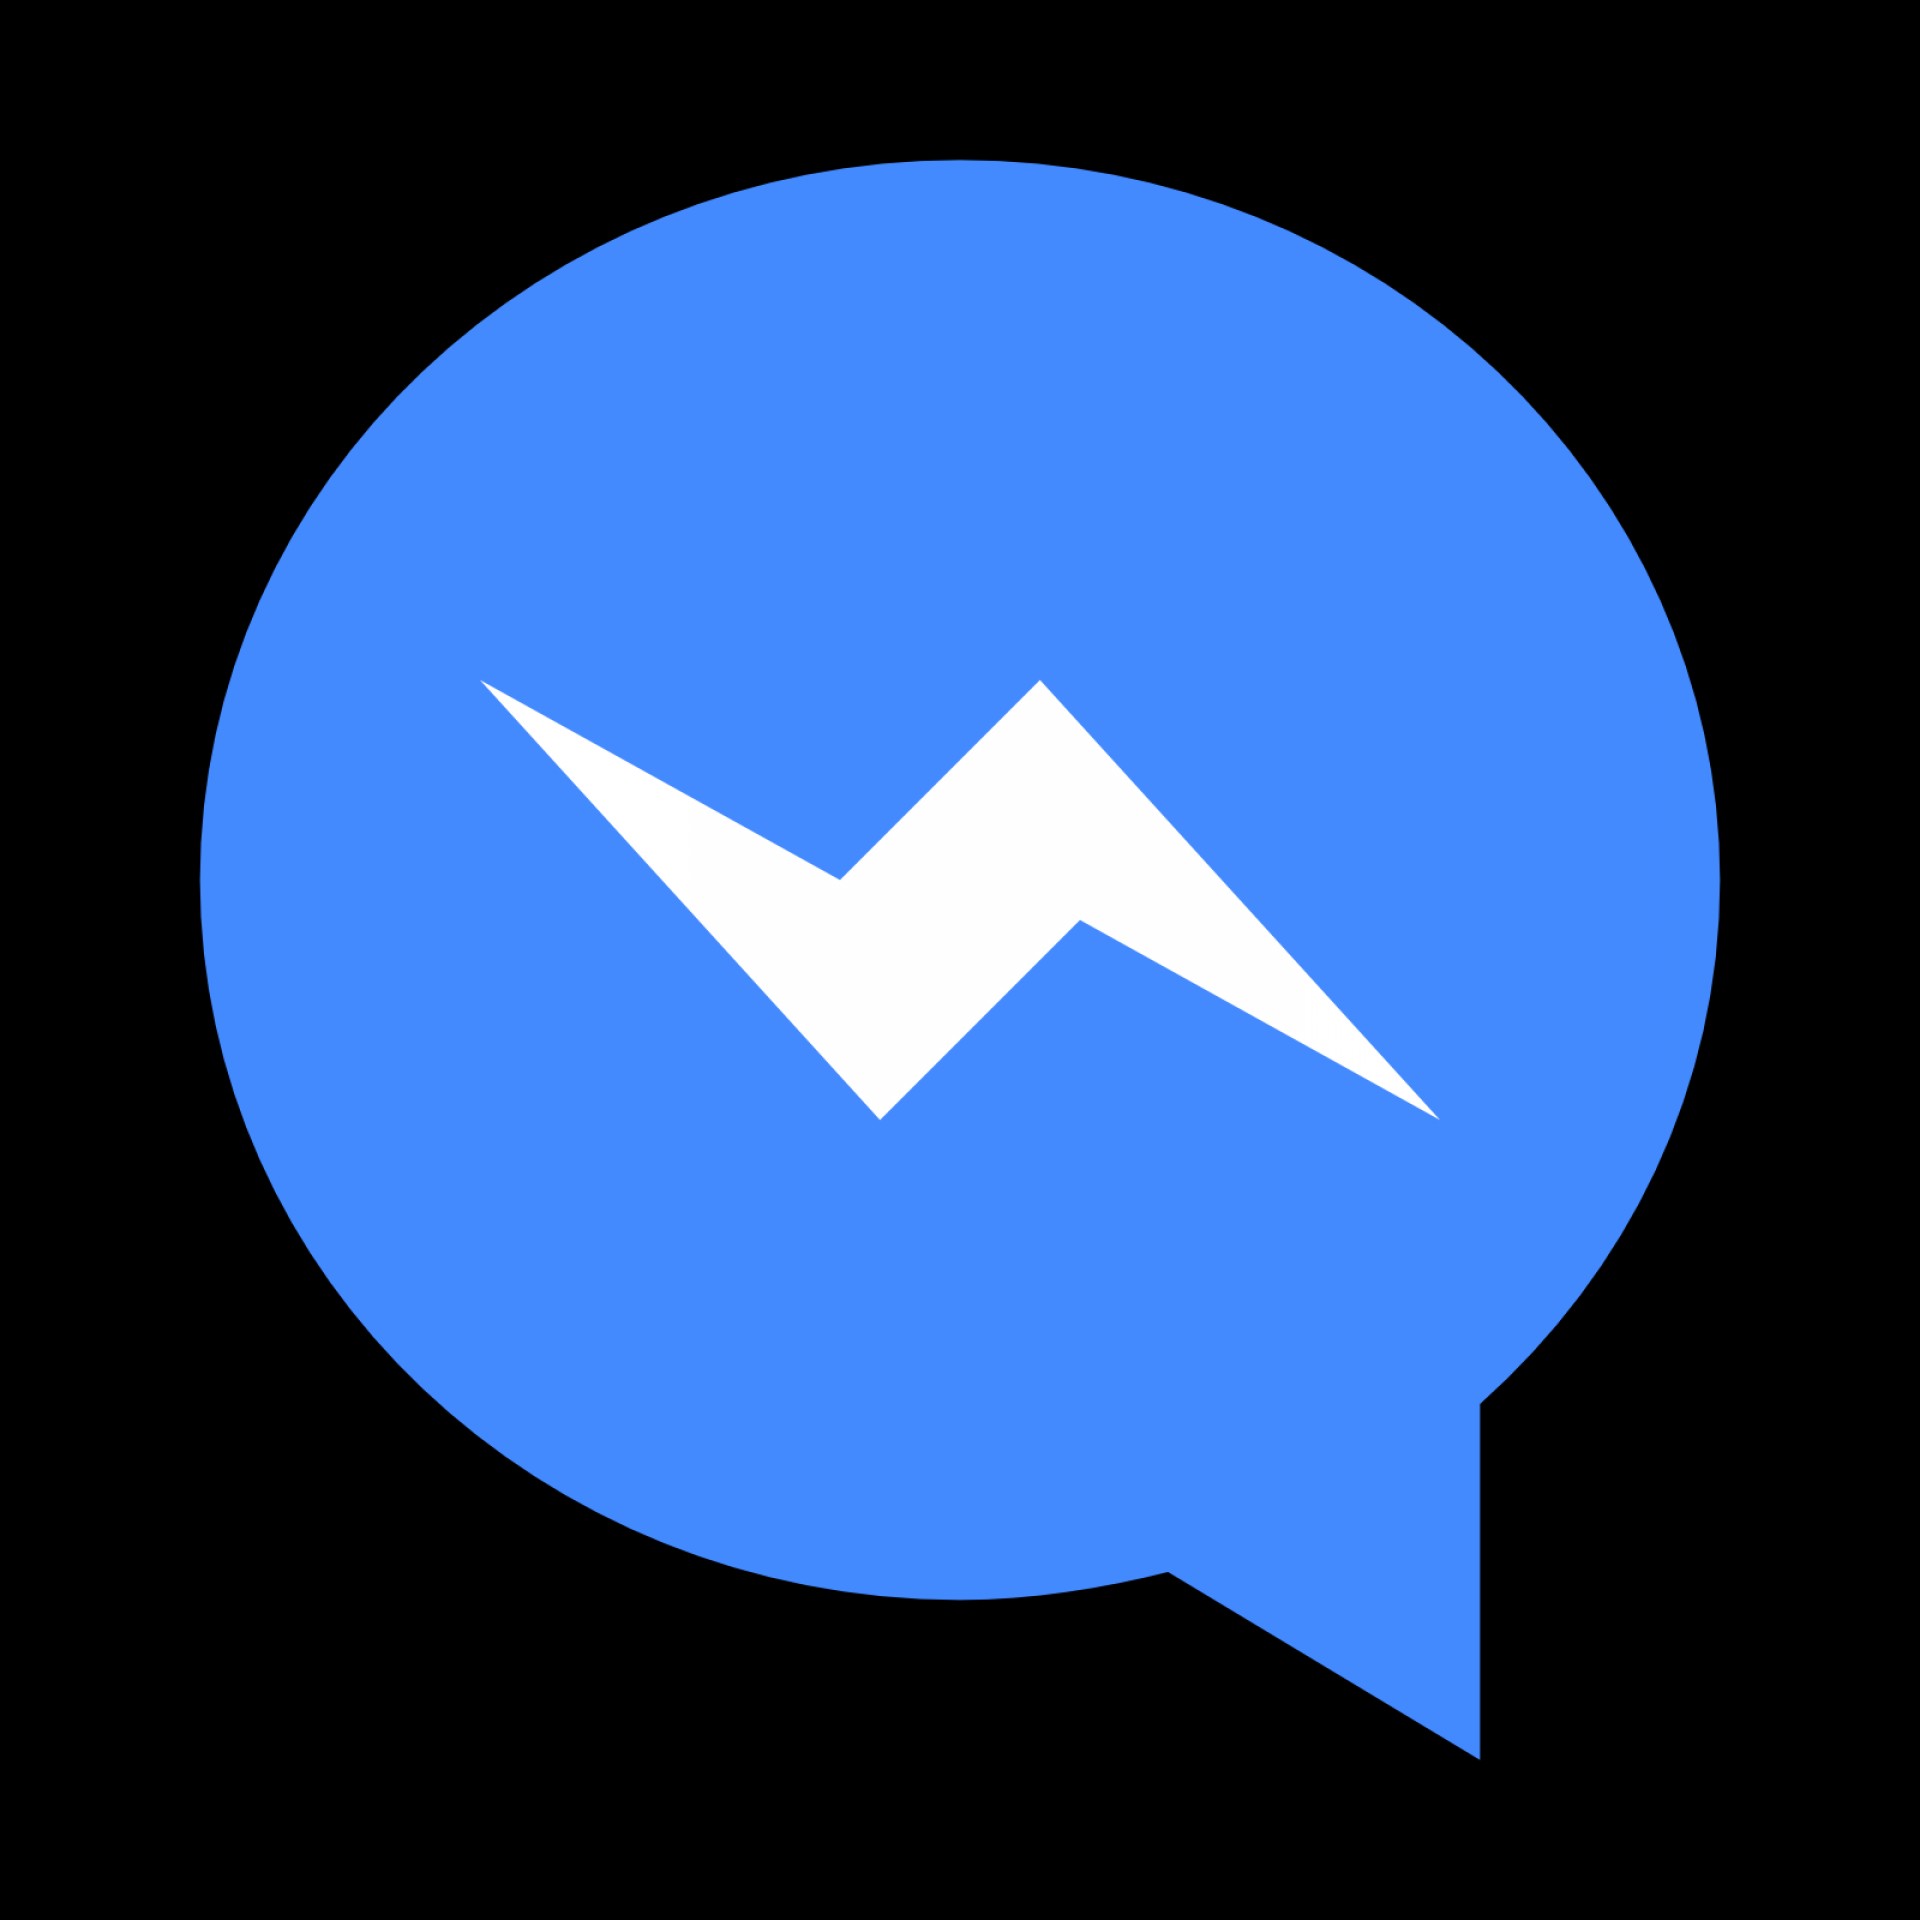 Мессенджер аи. Лого мессенджеров. Мессенджер с молнией. Facebook Messenger логотип. Значки приложений мессенджеров.